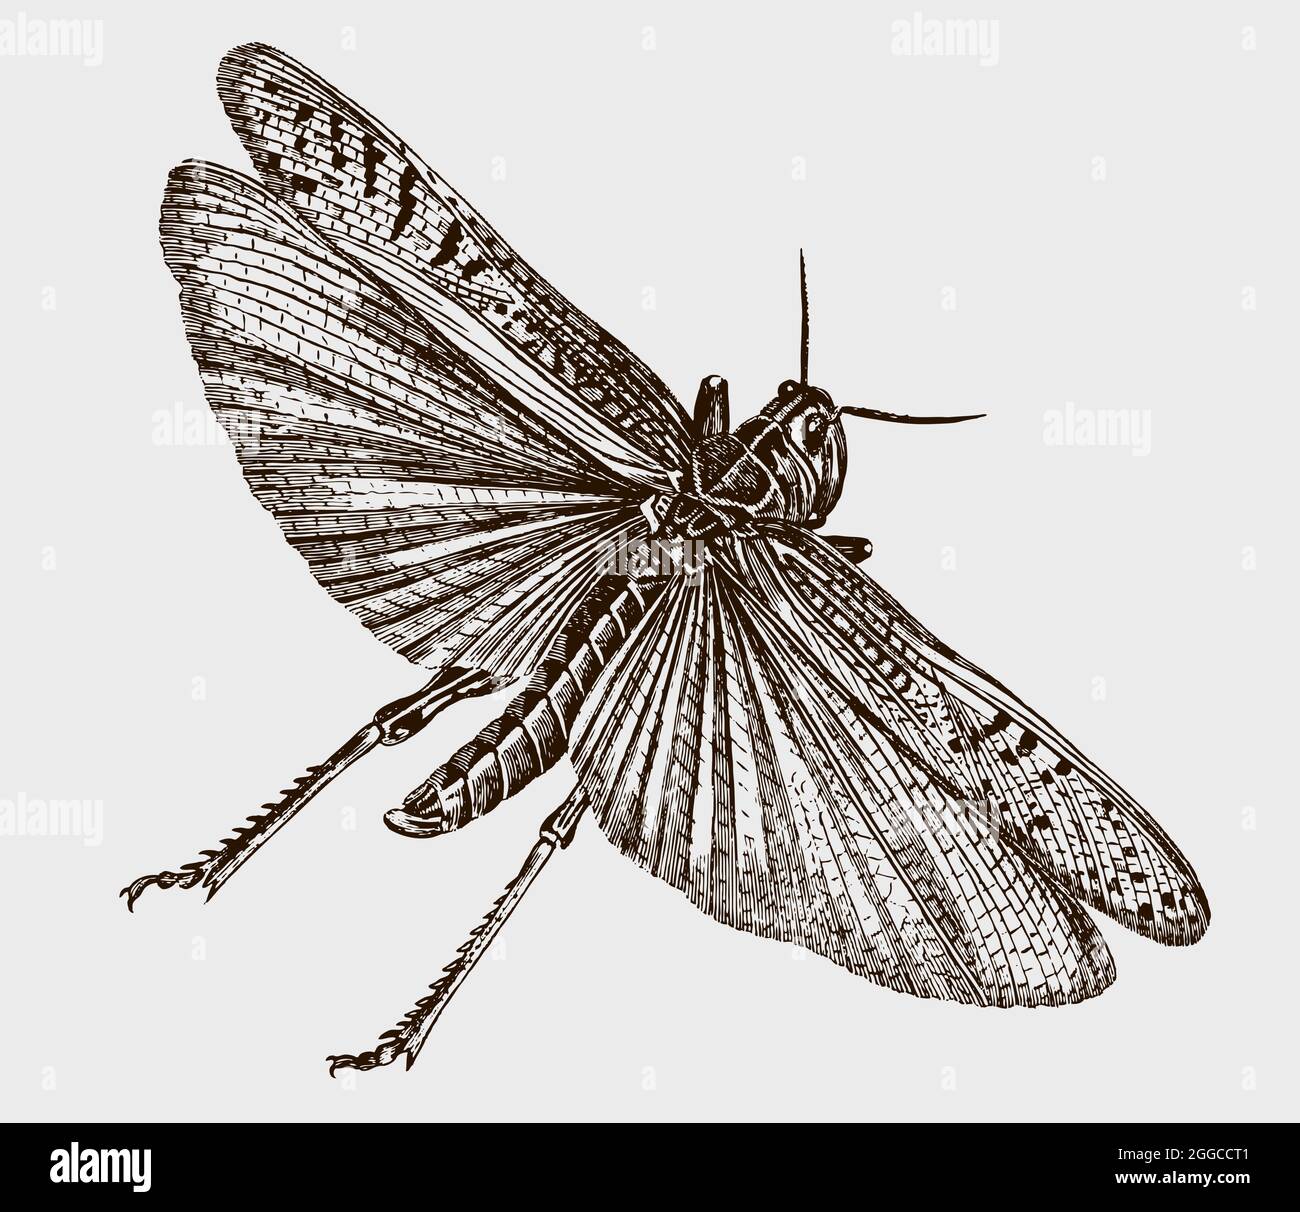 Fliegende Wanderheuschrecke, Wanderheuschrecke in Draufsicht. Illustration nach antikem Stich aus dem frühen 19. Jahrhundert Stock Vektor